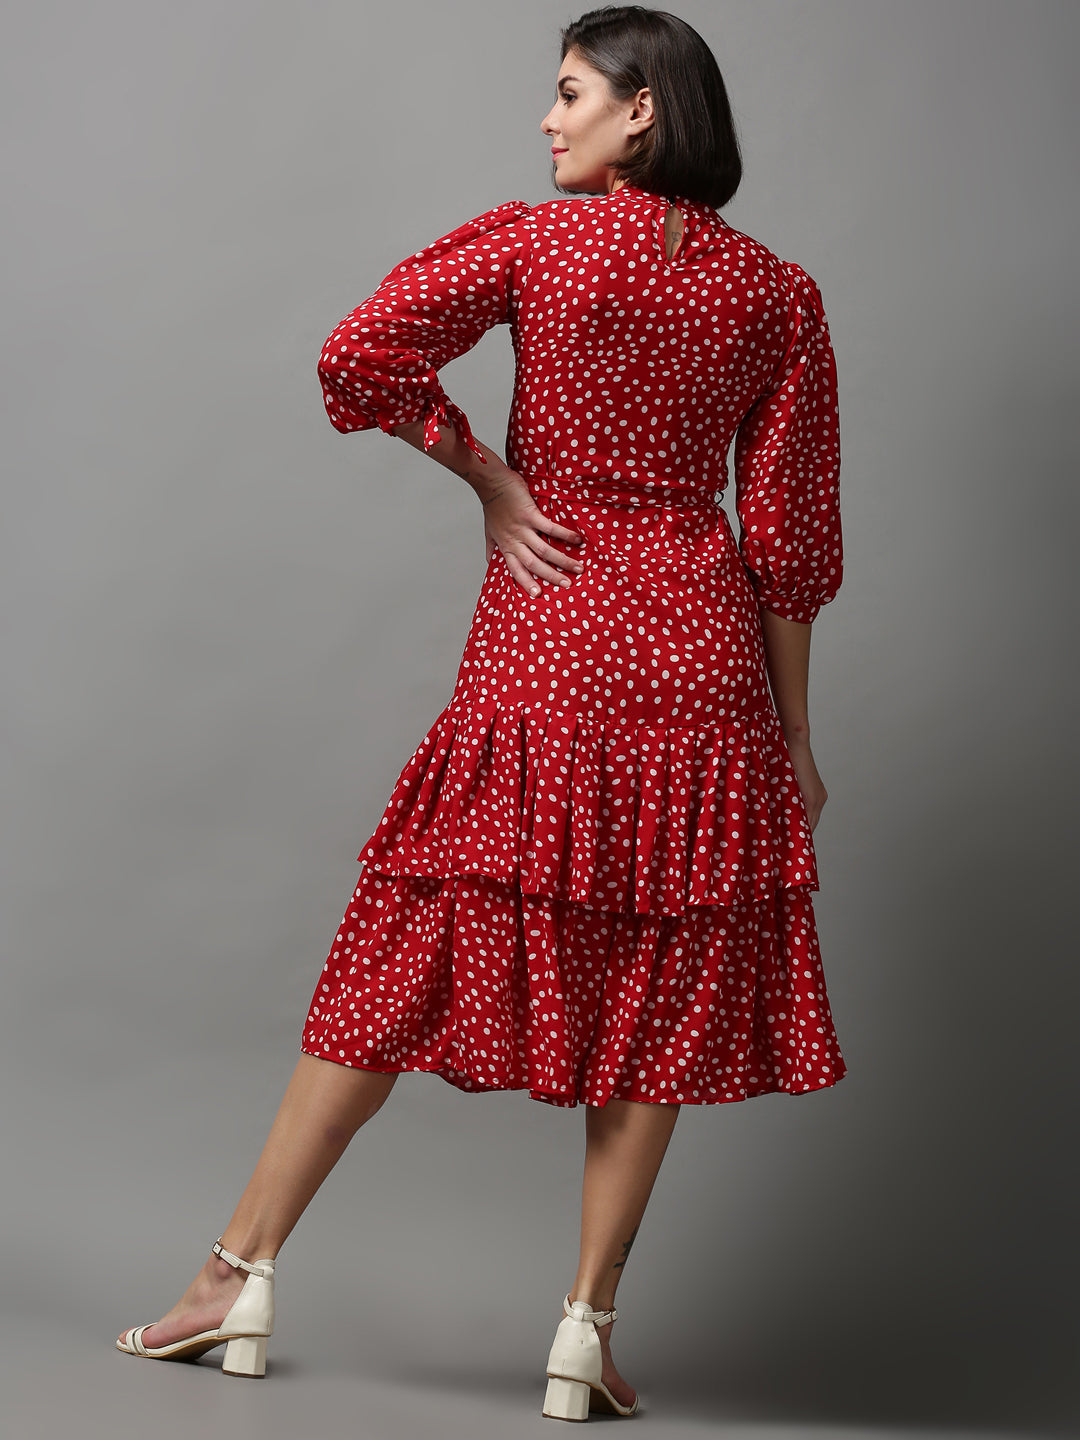 Women's Red Printed Drop-Waist Dress